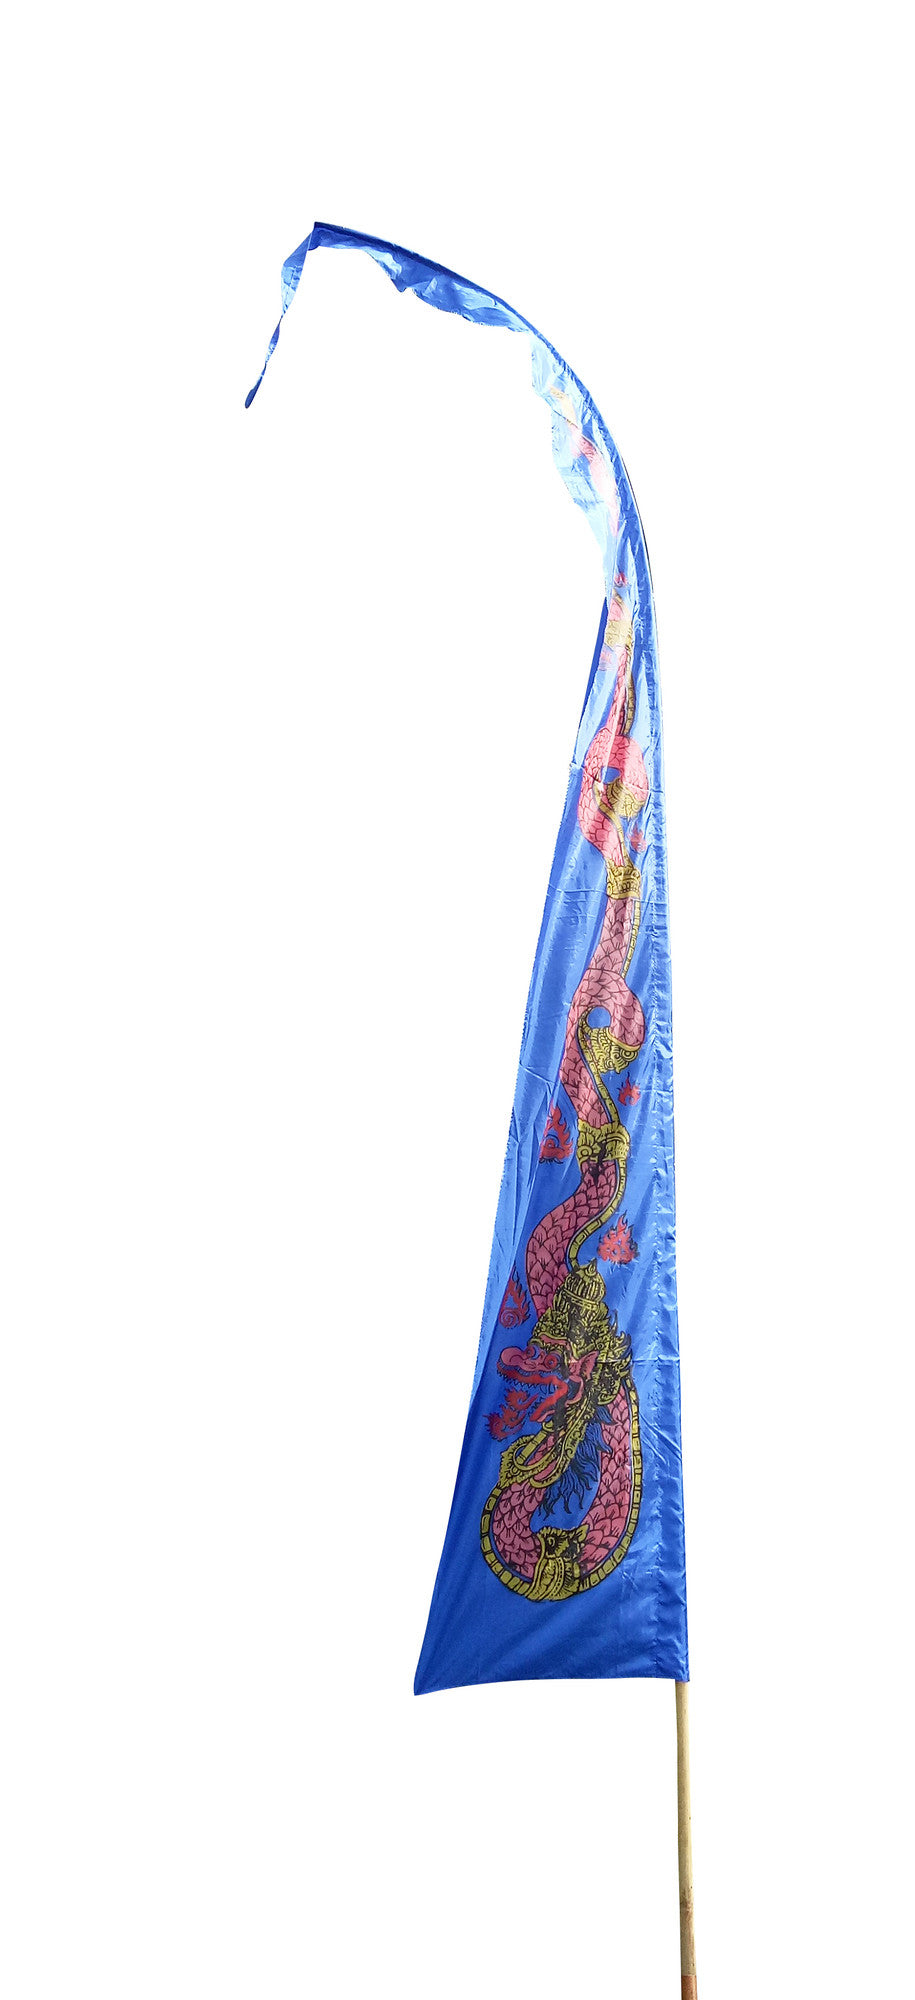 Drachenfahnen-Stoff DRAGON mit herzförmiger Spitze, Farbe blau